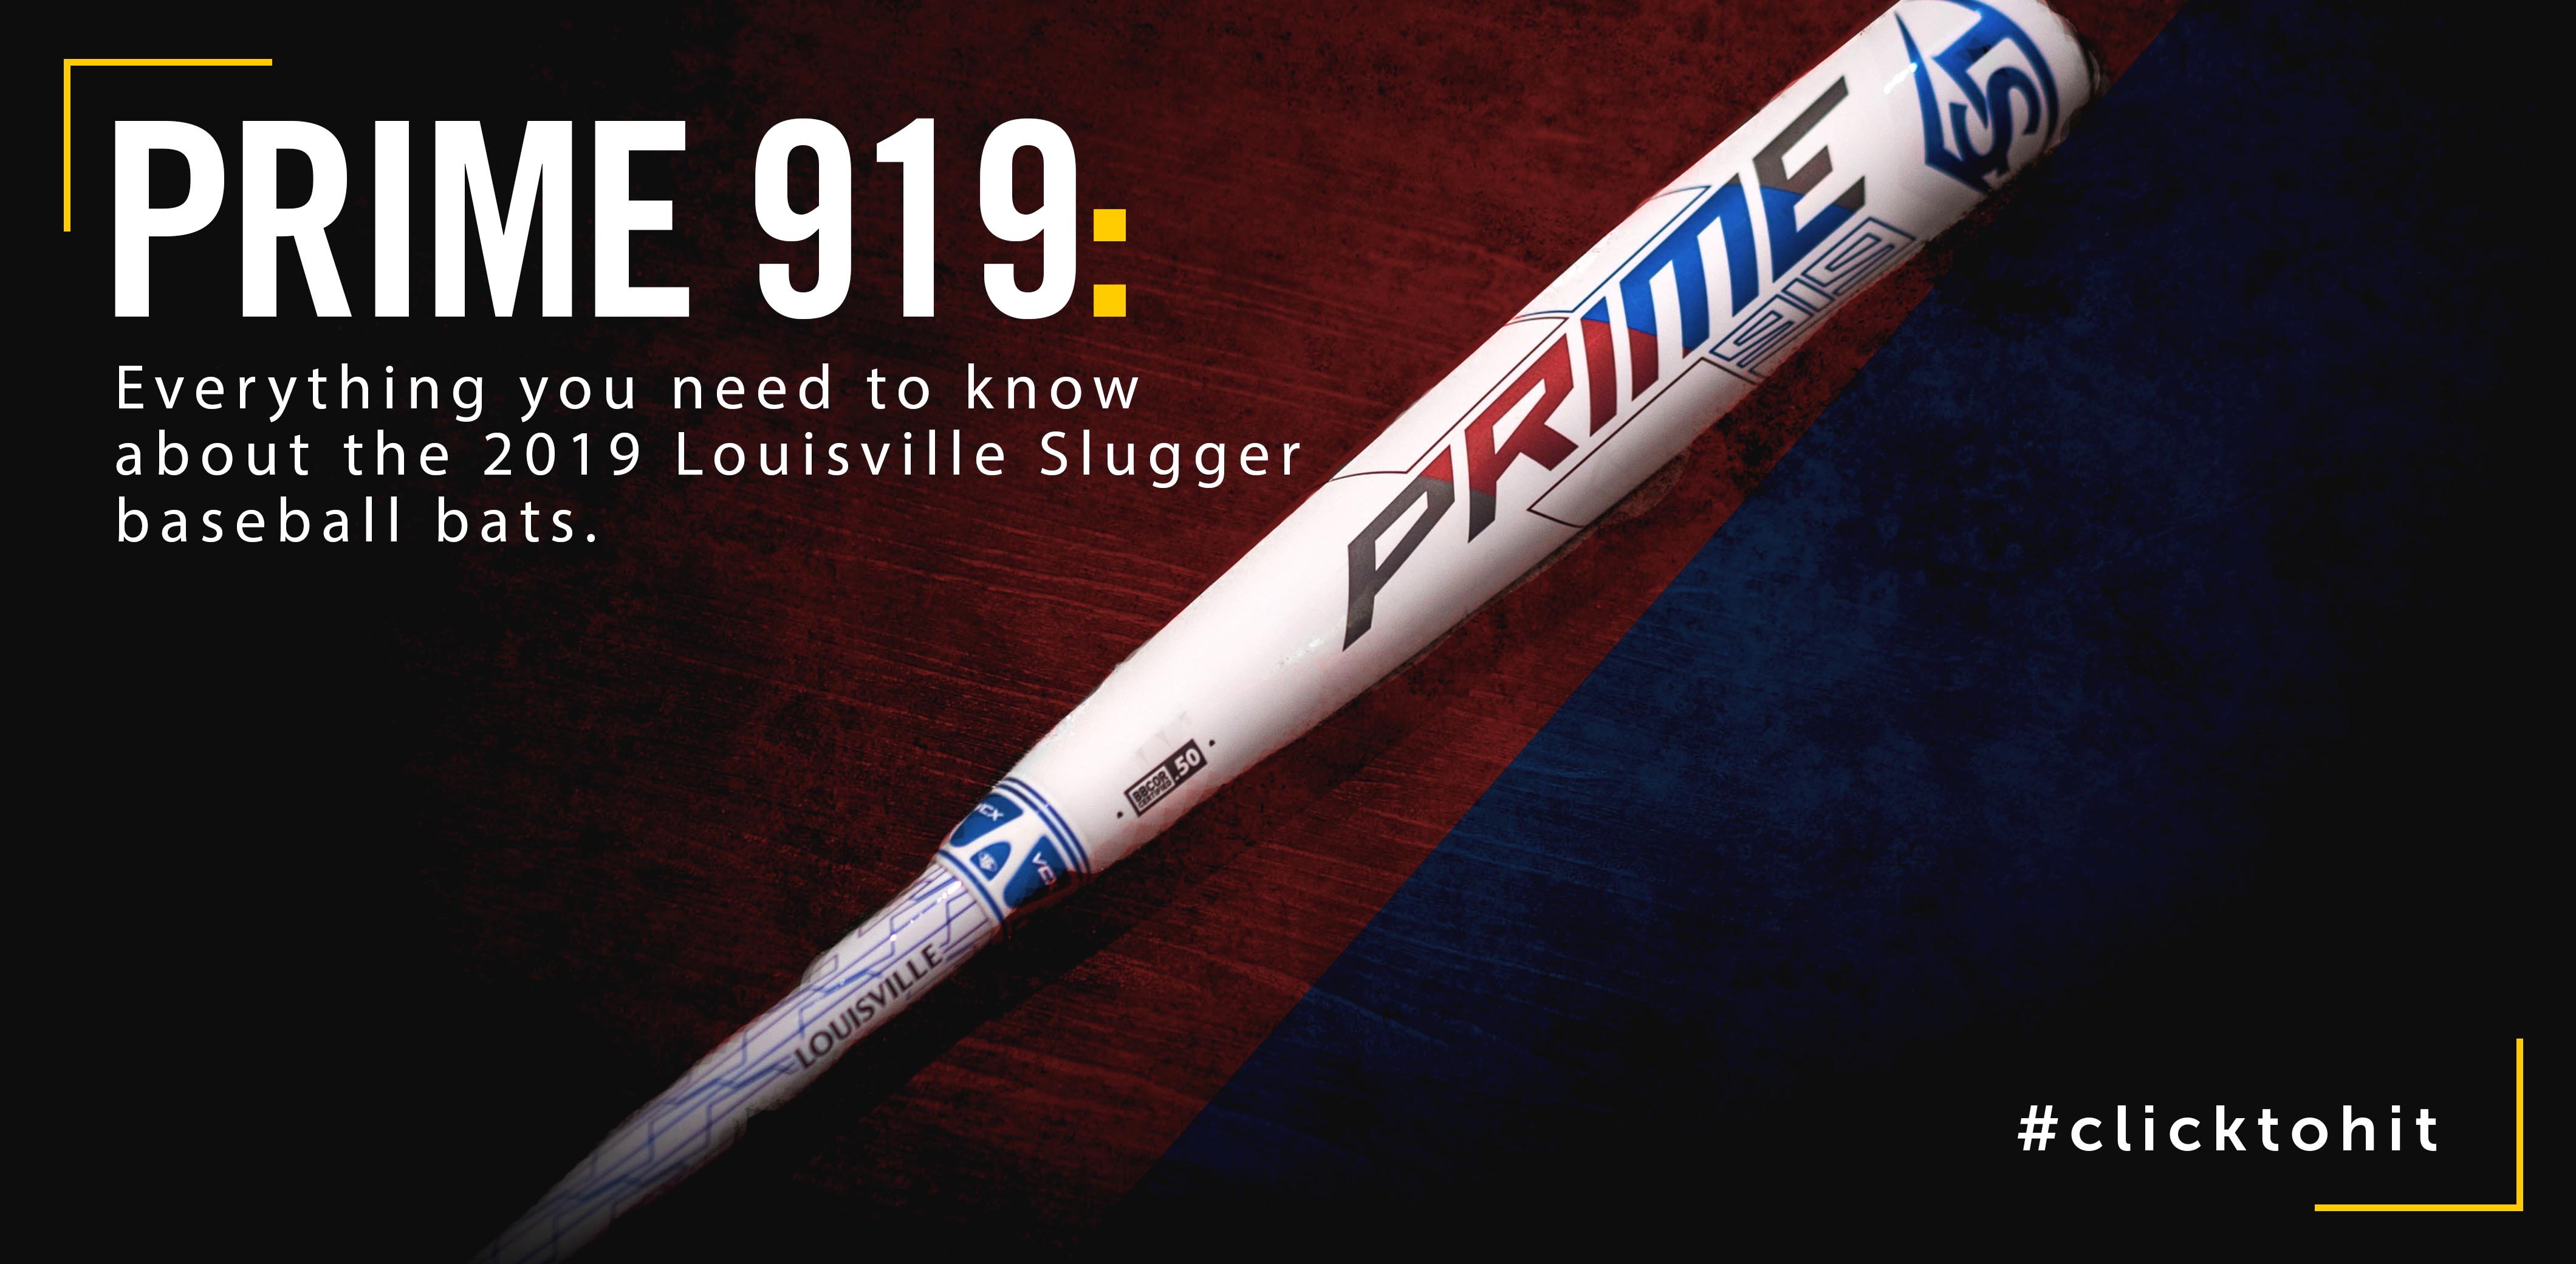 Bat Review: 2019 Louisville Slugger Prime 919 Bat